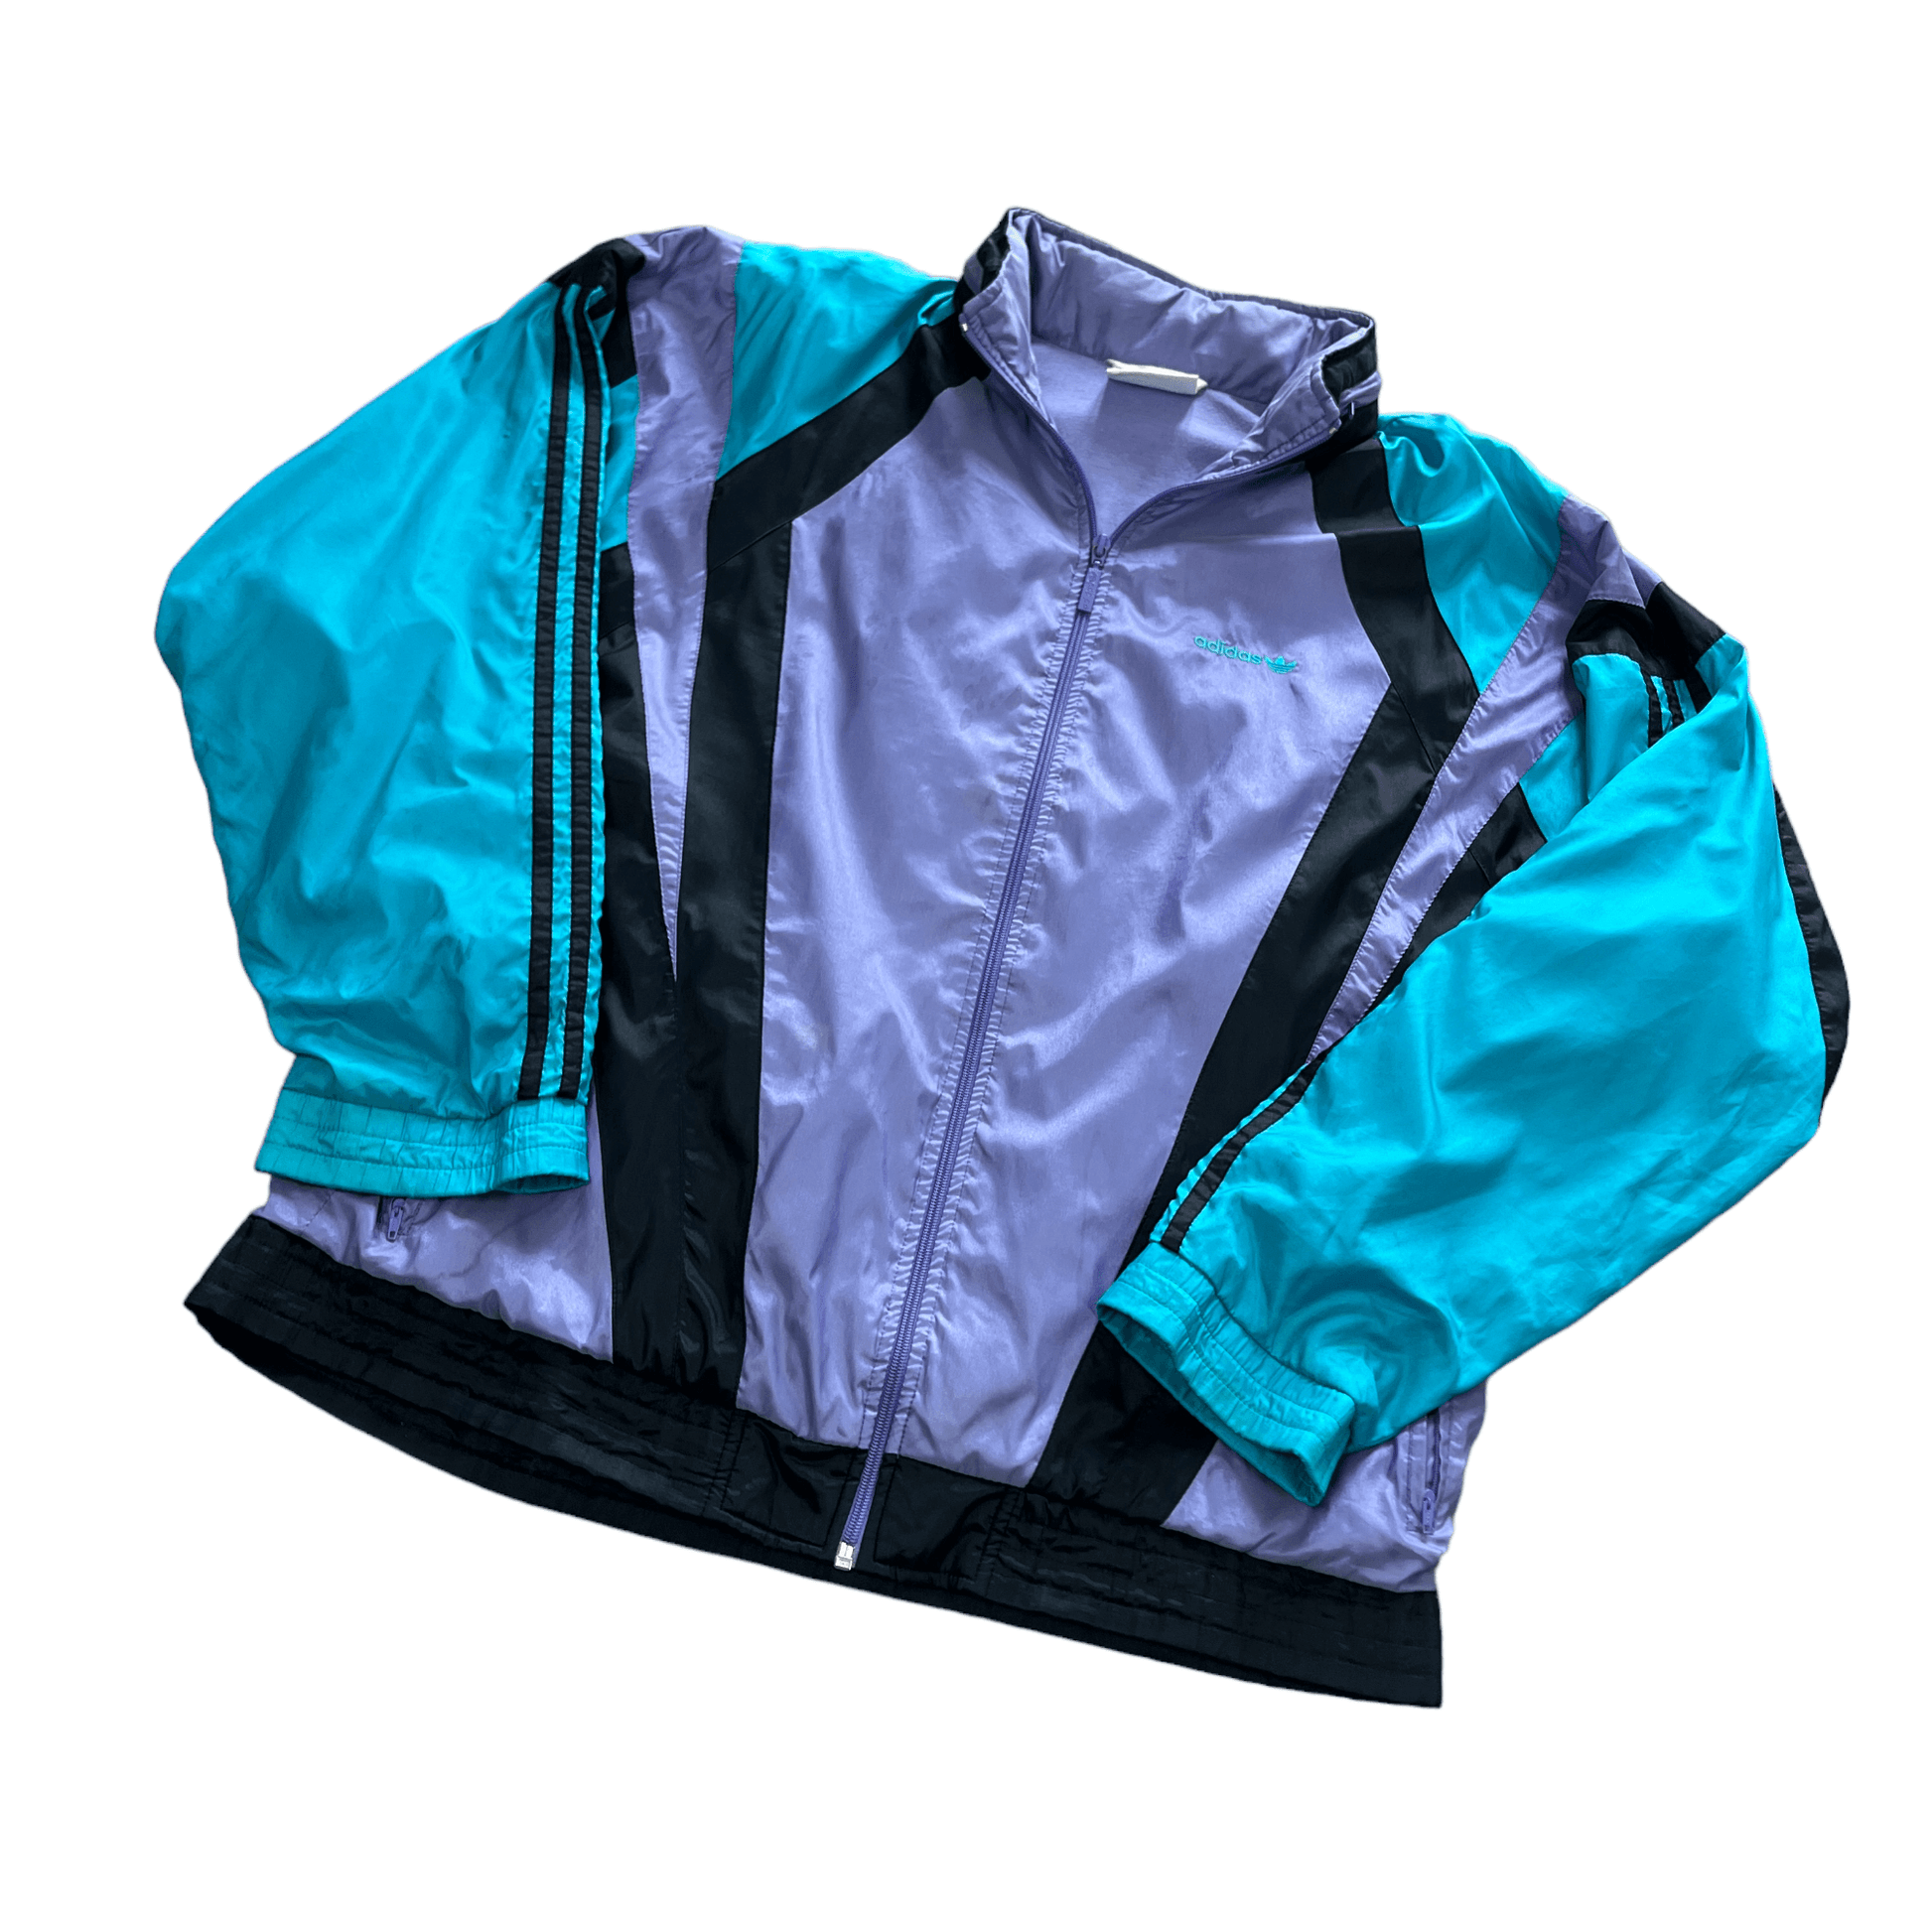 Vintage 90s Blue, Black + Purple Adidas Jacket - Extra Large - The Streetwear Studio